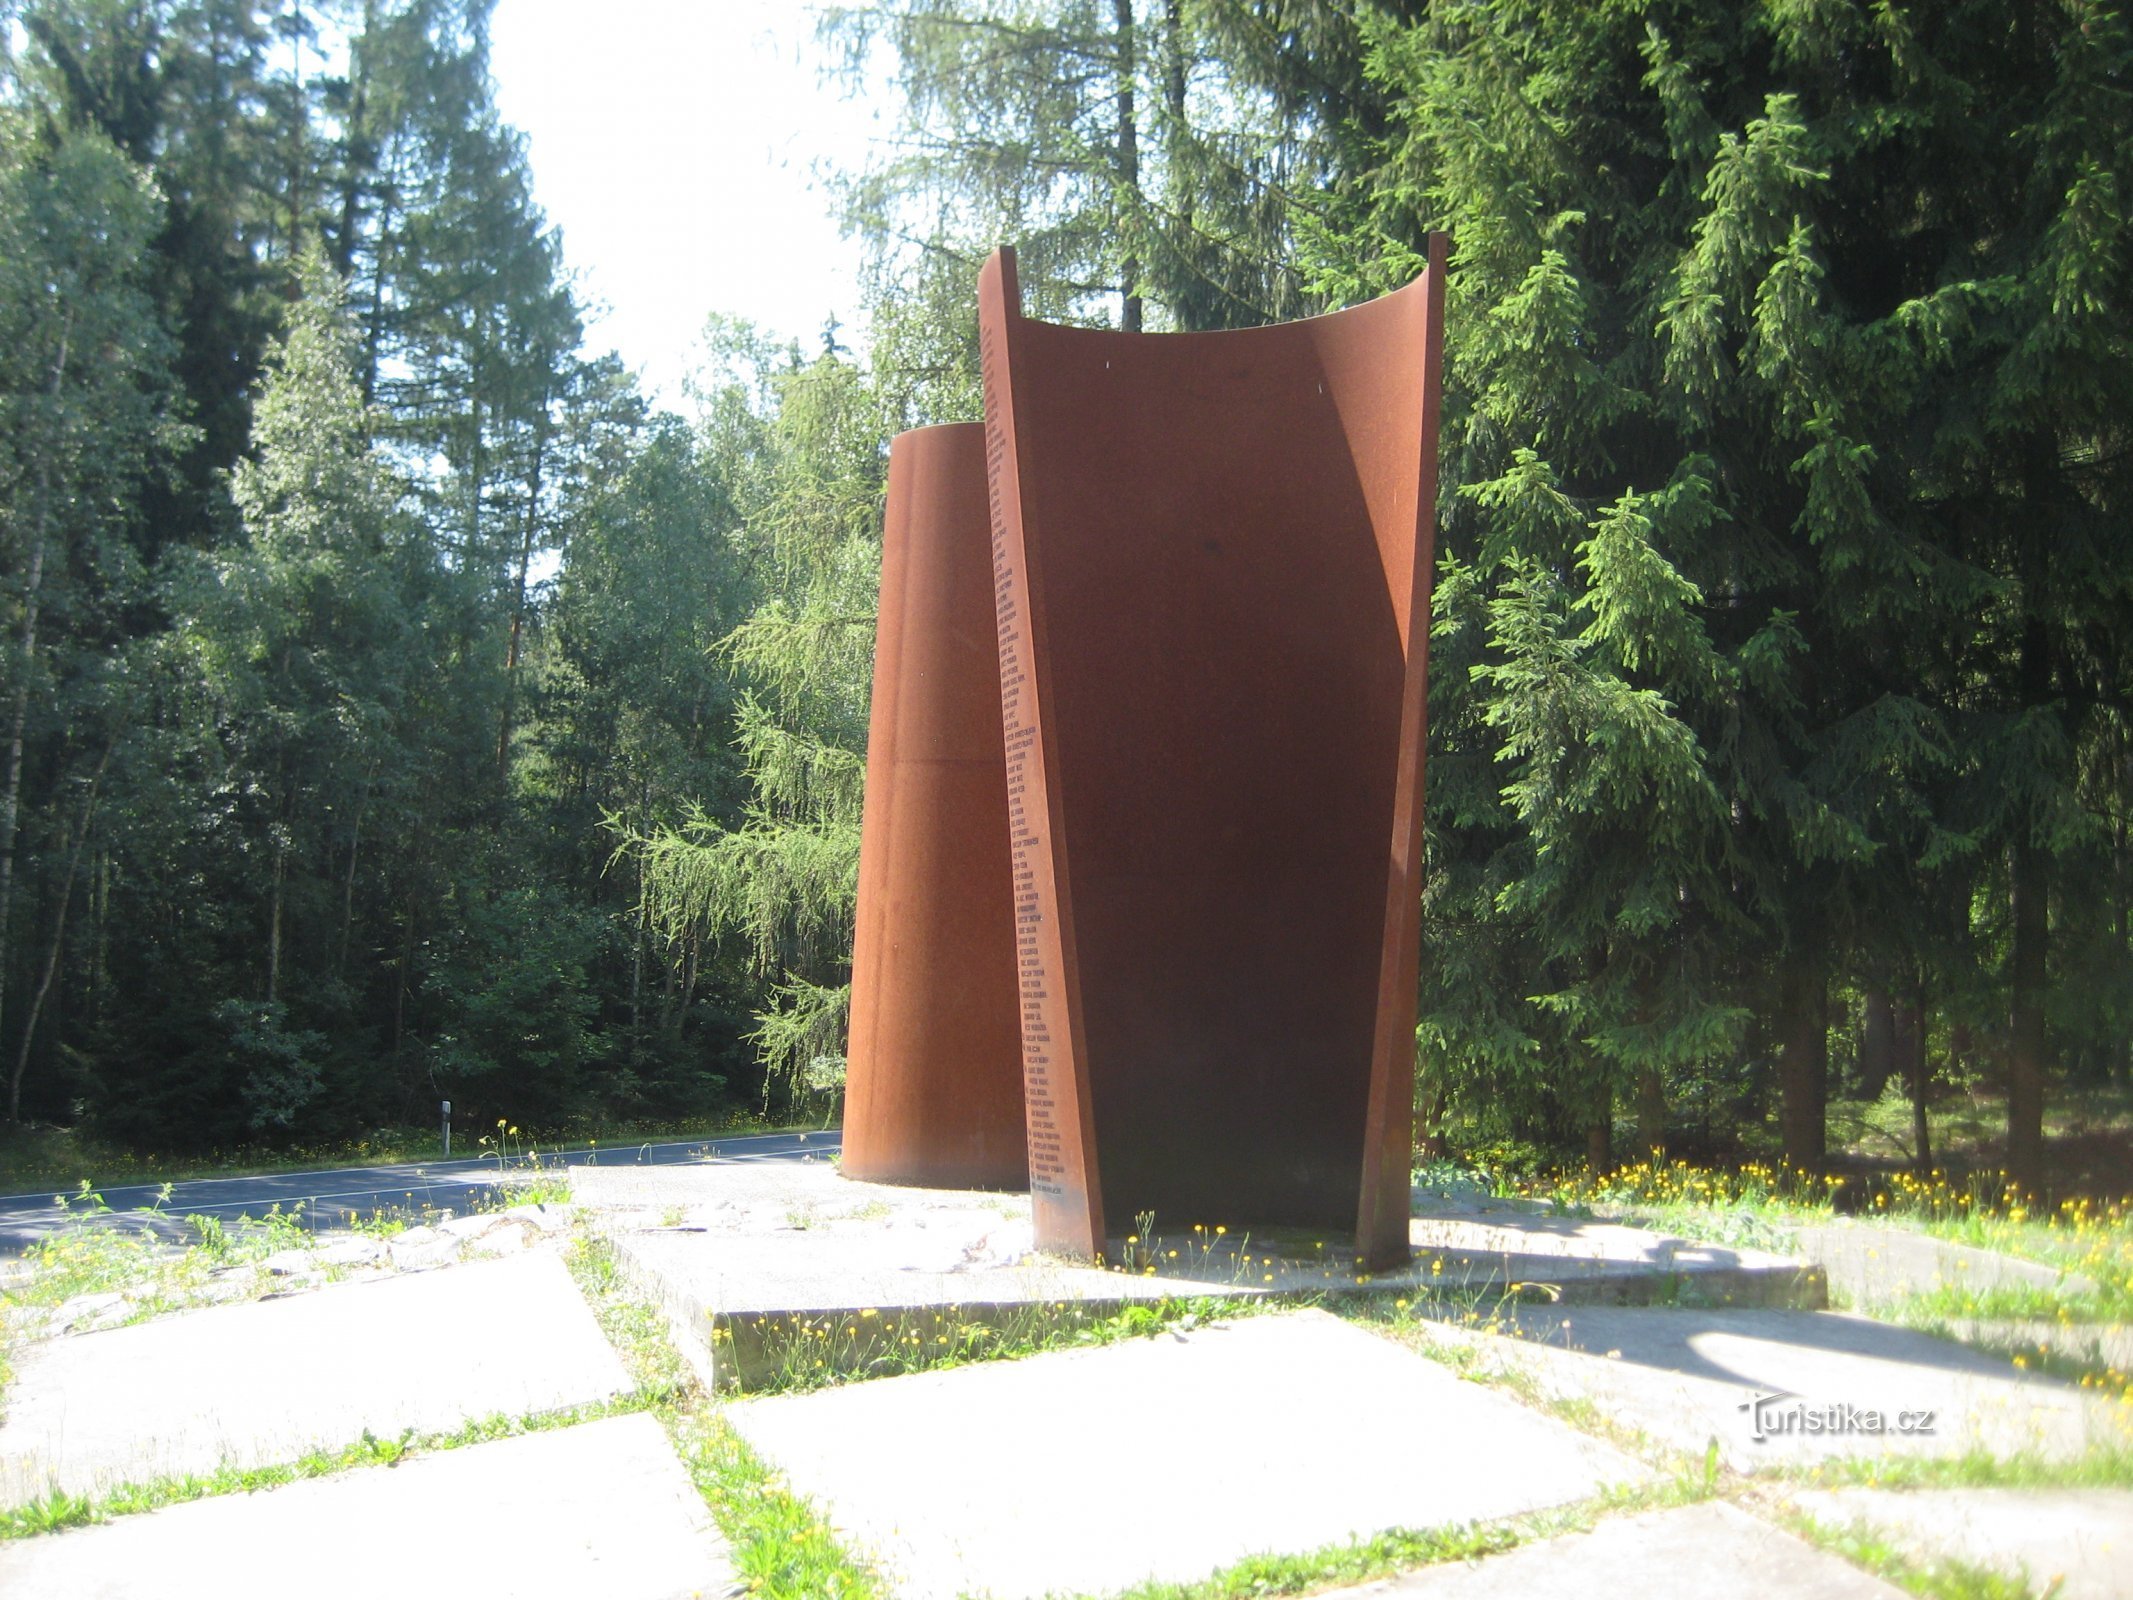 Monumento alle vittime della cortina di ferro - Cheb